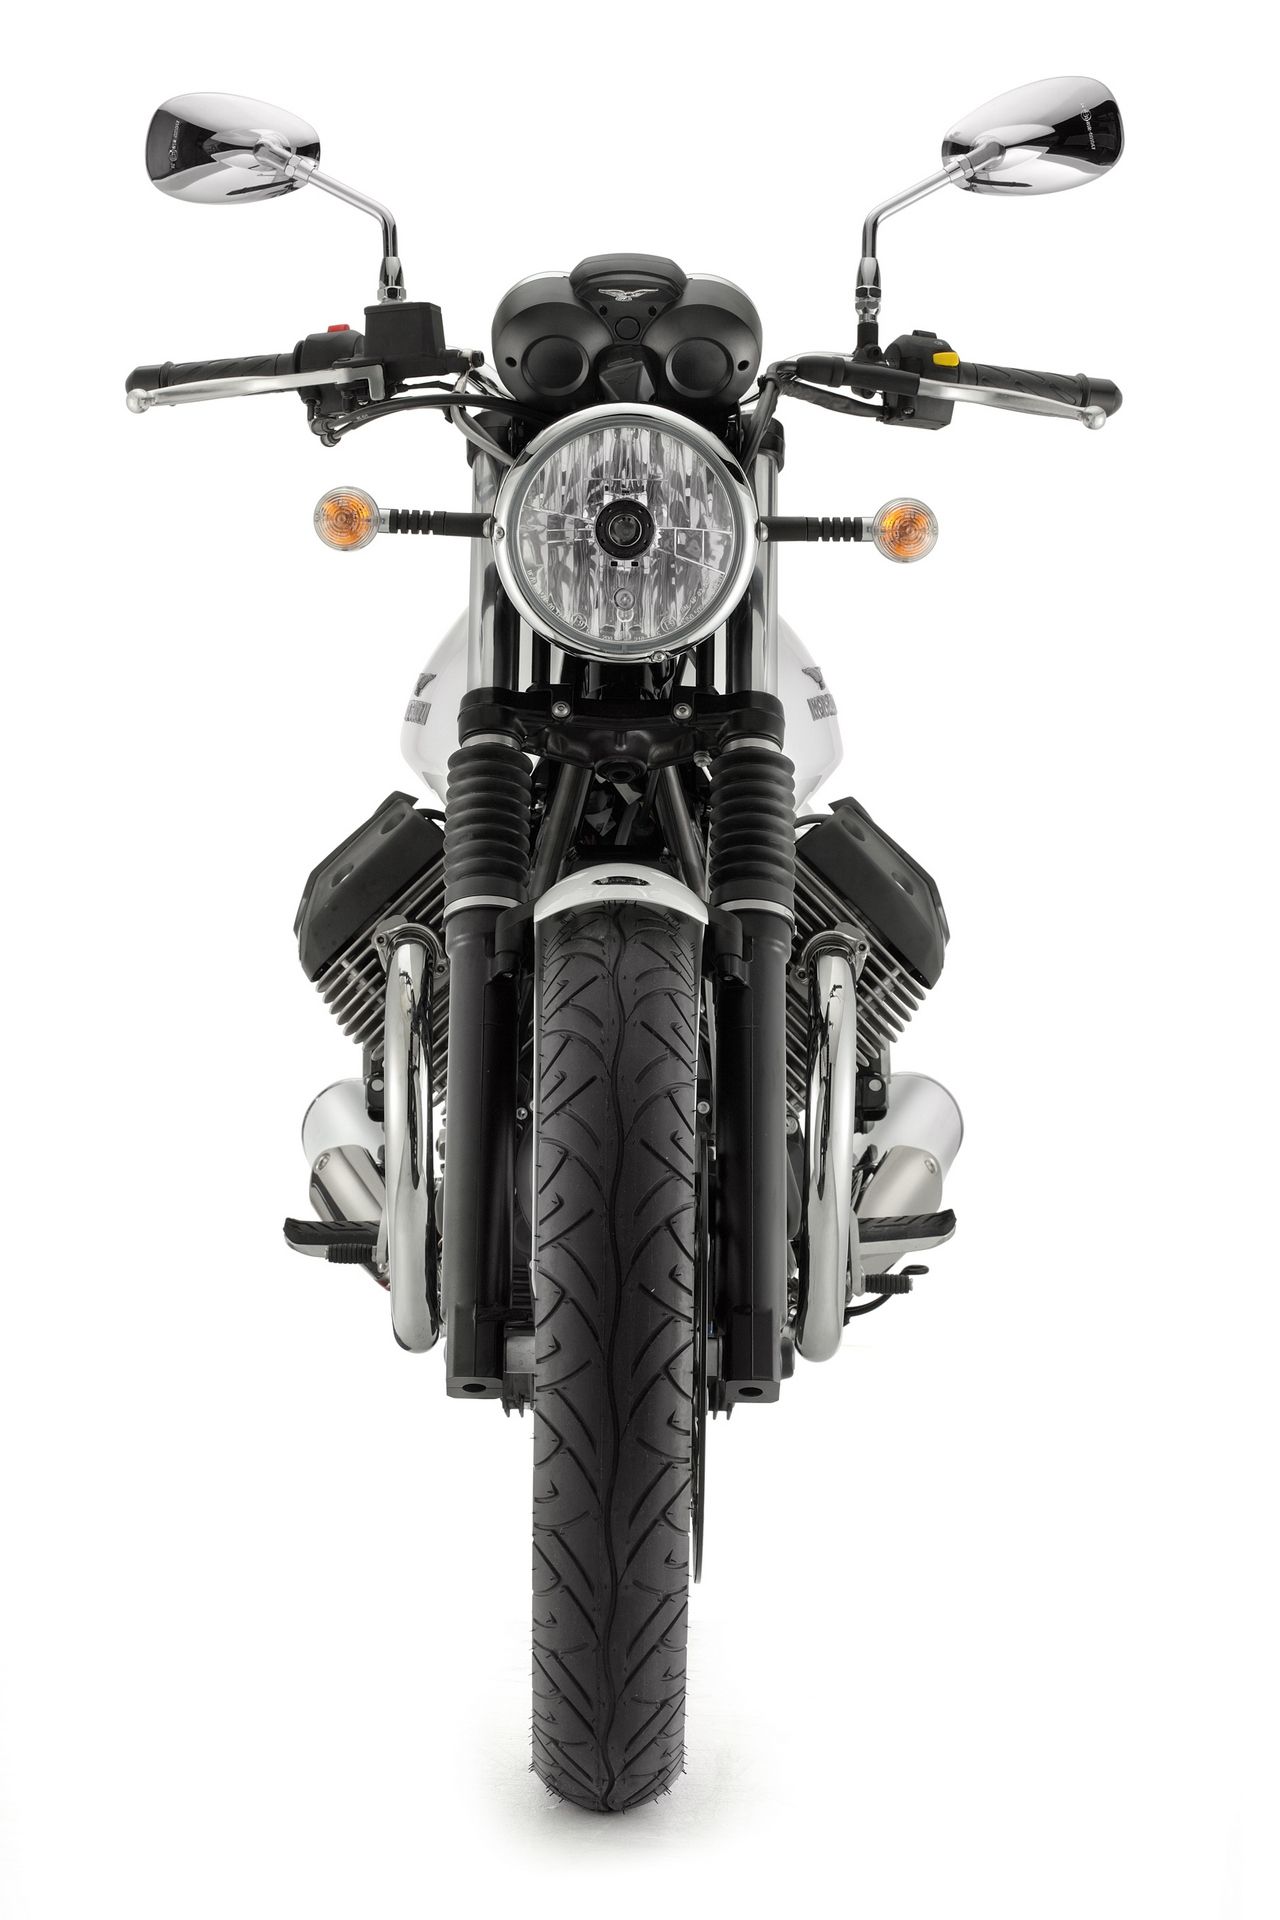 2013 Moto Guzzi V7 Stone